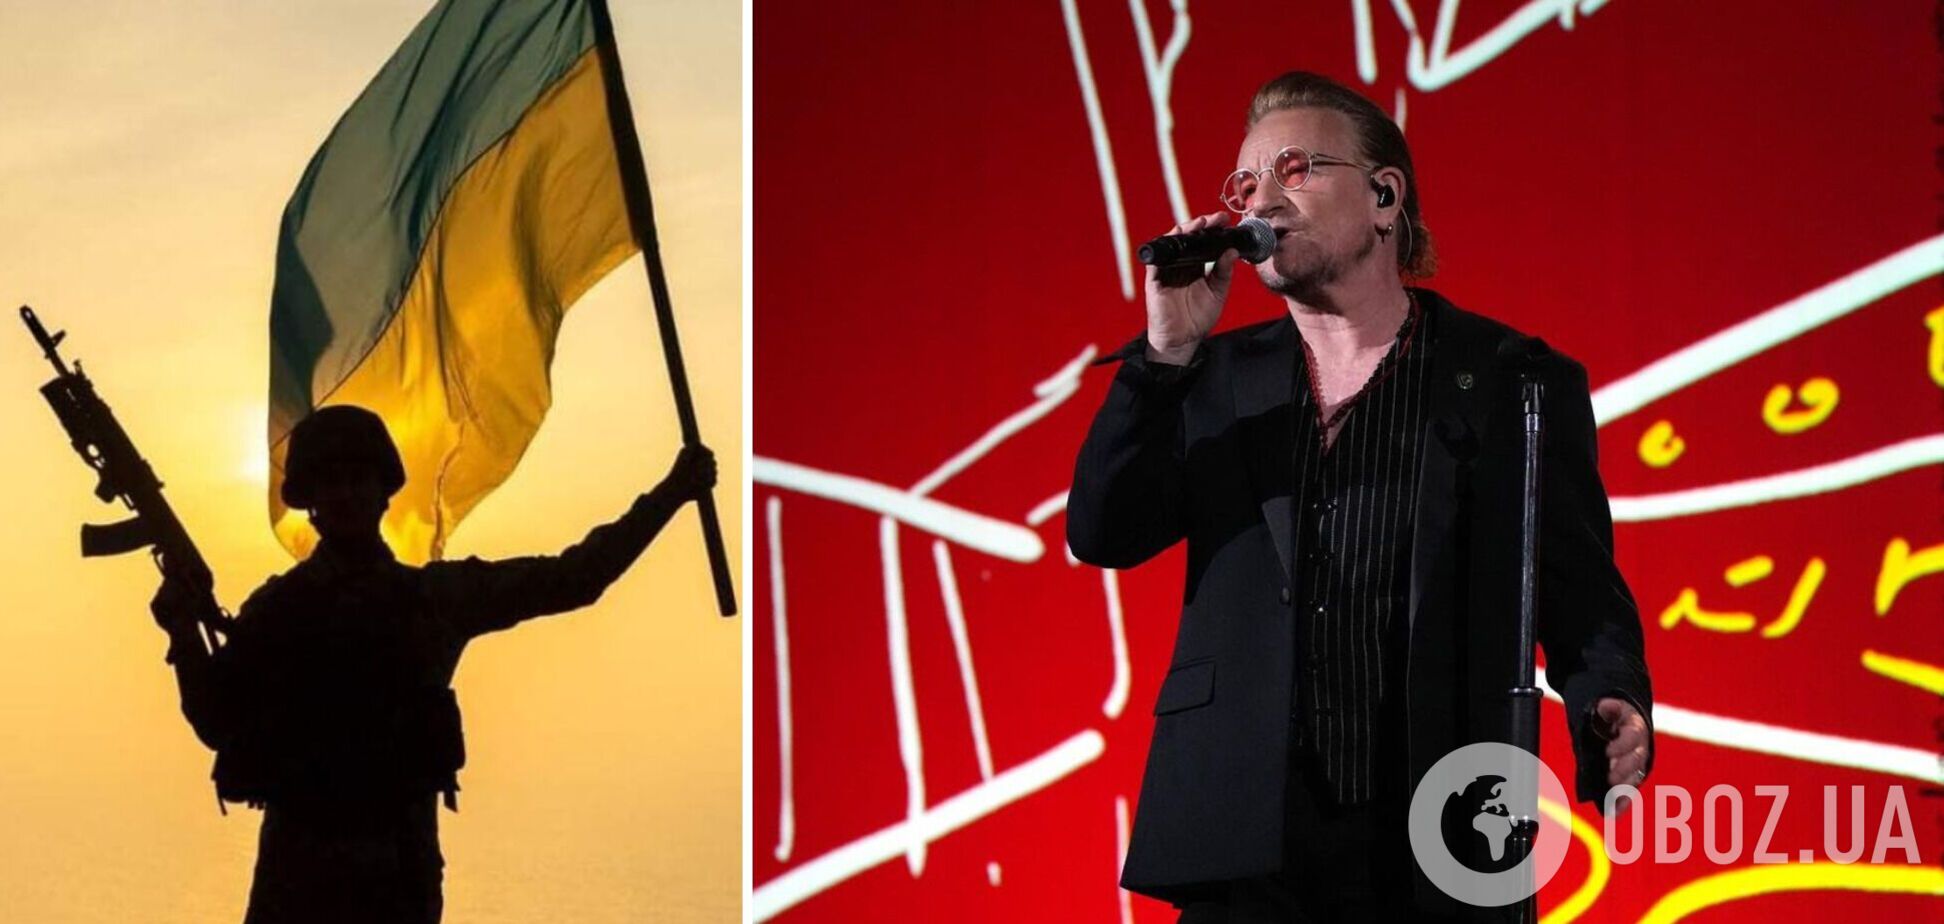 'Они борются за нашу свободу': лидер культовой группы U2 Боно на концерте в Лас-Вегасе призвал США помогать Украине. Видео